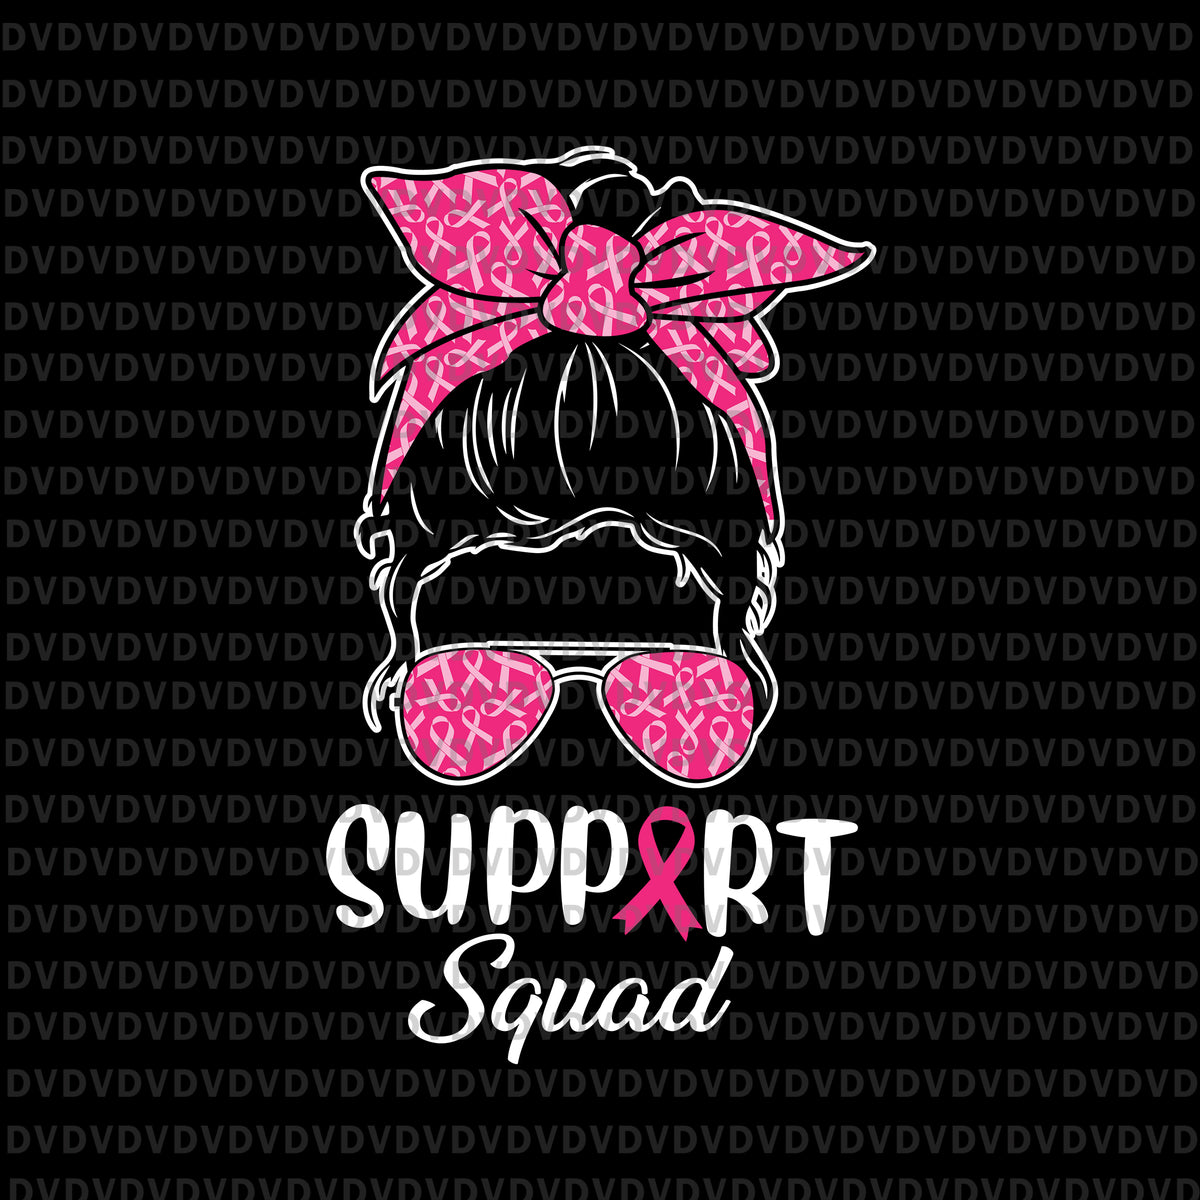 Breast Cancer Warrior SVG, Breast Cancer Messy Bun SVG By  LemonStudioCreations